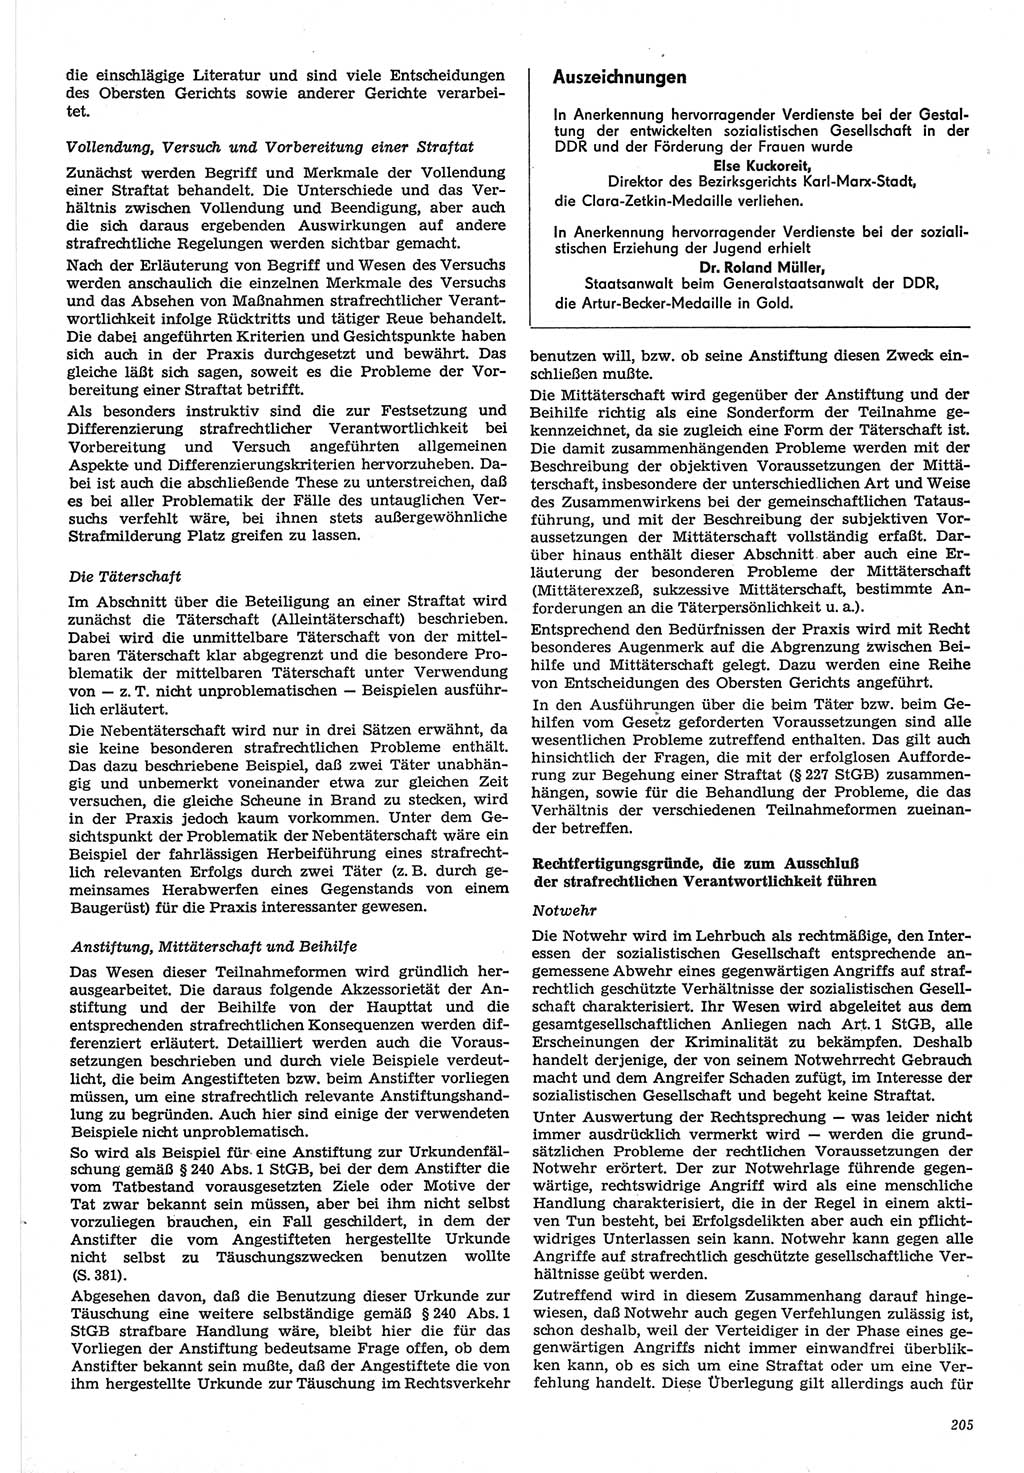 Neue Justiz (NJ), Zeitschrift für Recht und Rechtswissenschaft-Zeitschrift, sozialistisches Recht und Gesetzlichkeit, 31. Jahrgang 1977, Seite 205 (NJ DDR 1977, S. 205)